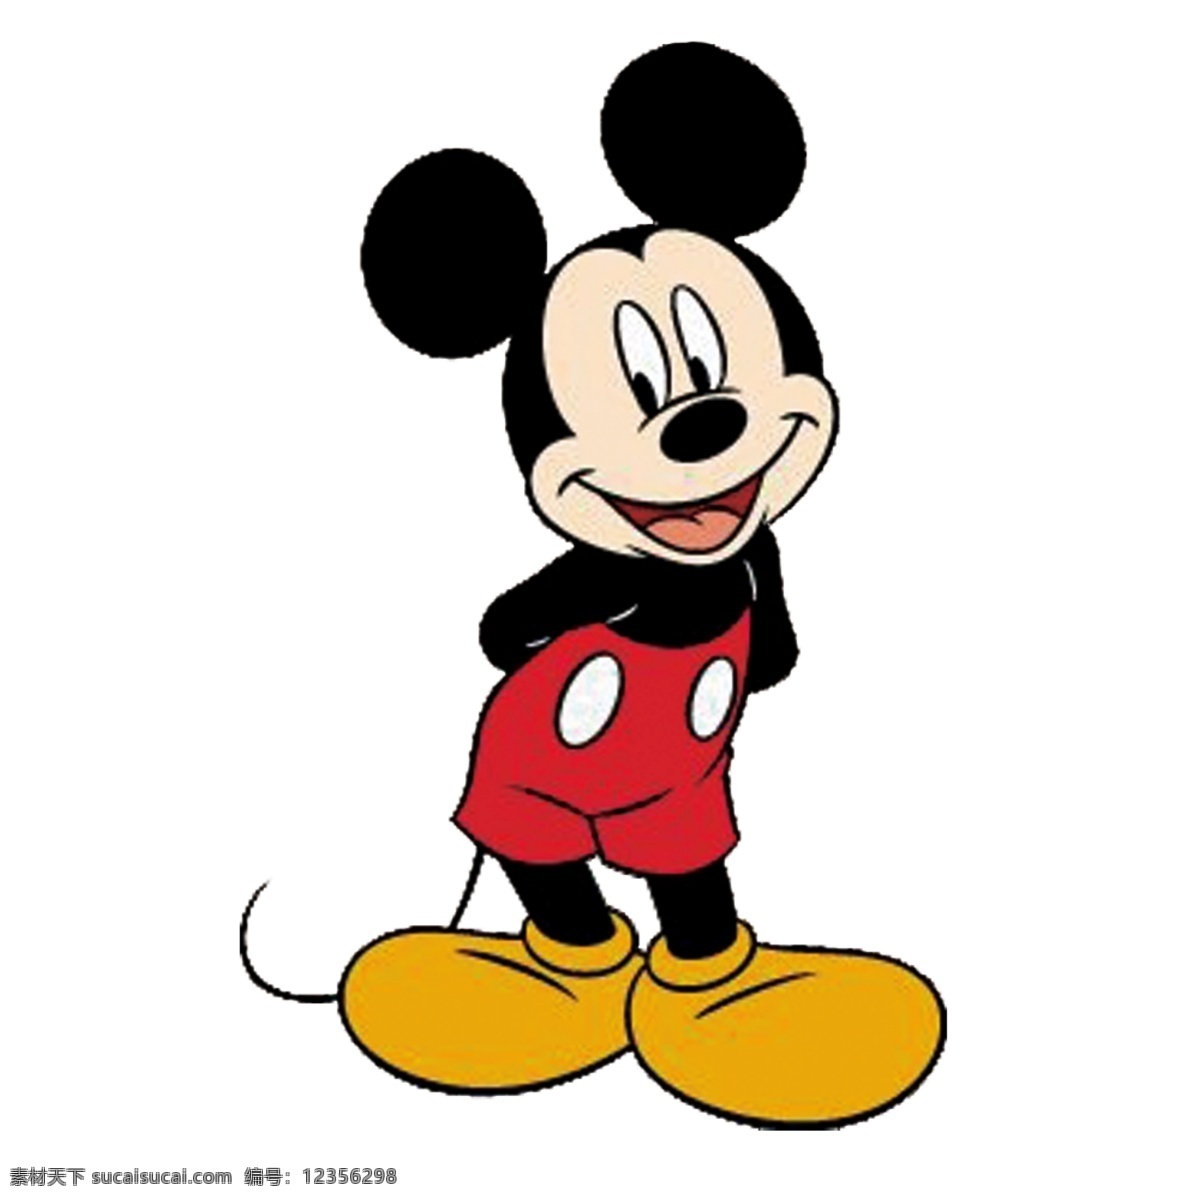 米老鼠图片 米老鼠 迪士尼 卡通 卡通人物 动画片 动漫动画 动漫人物